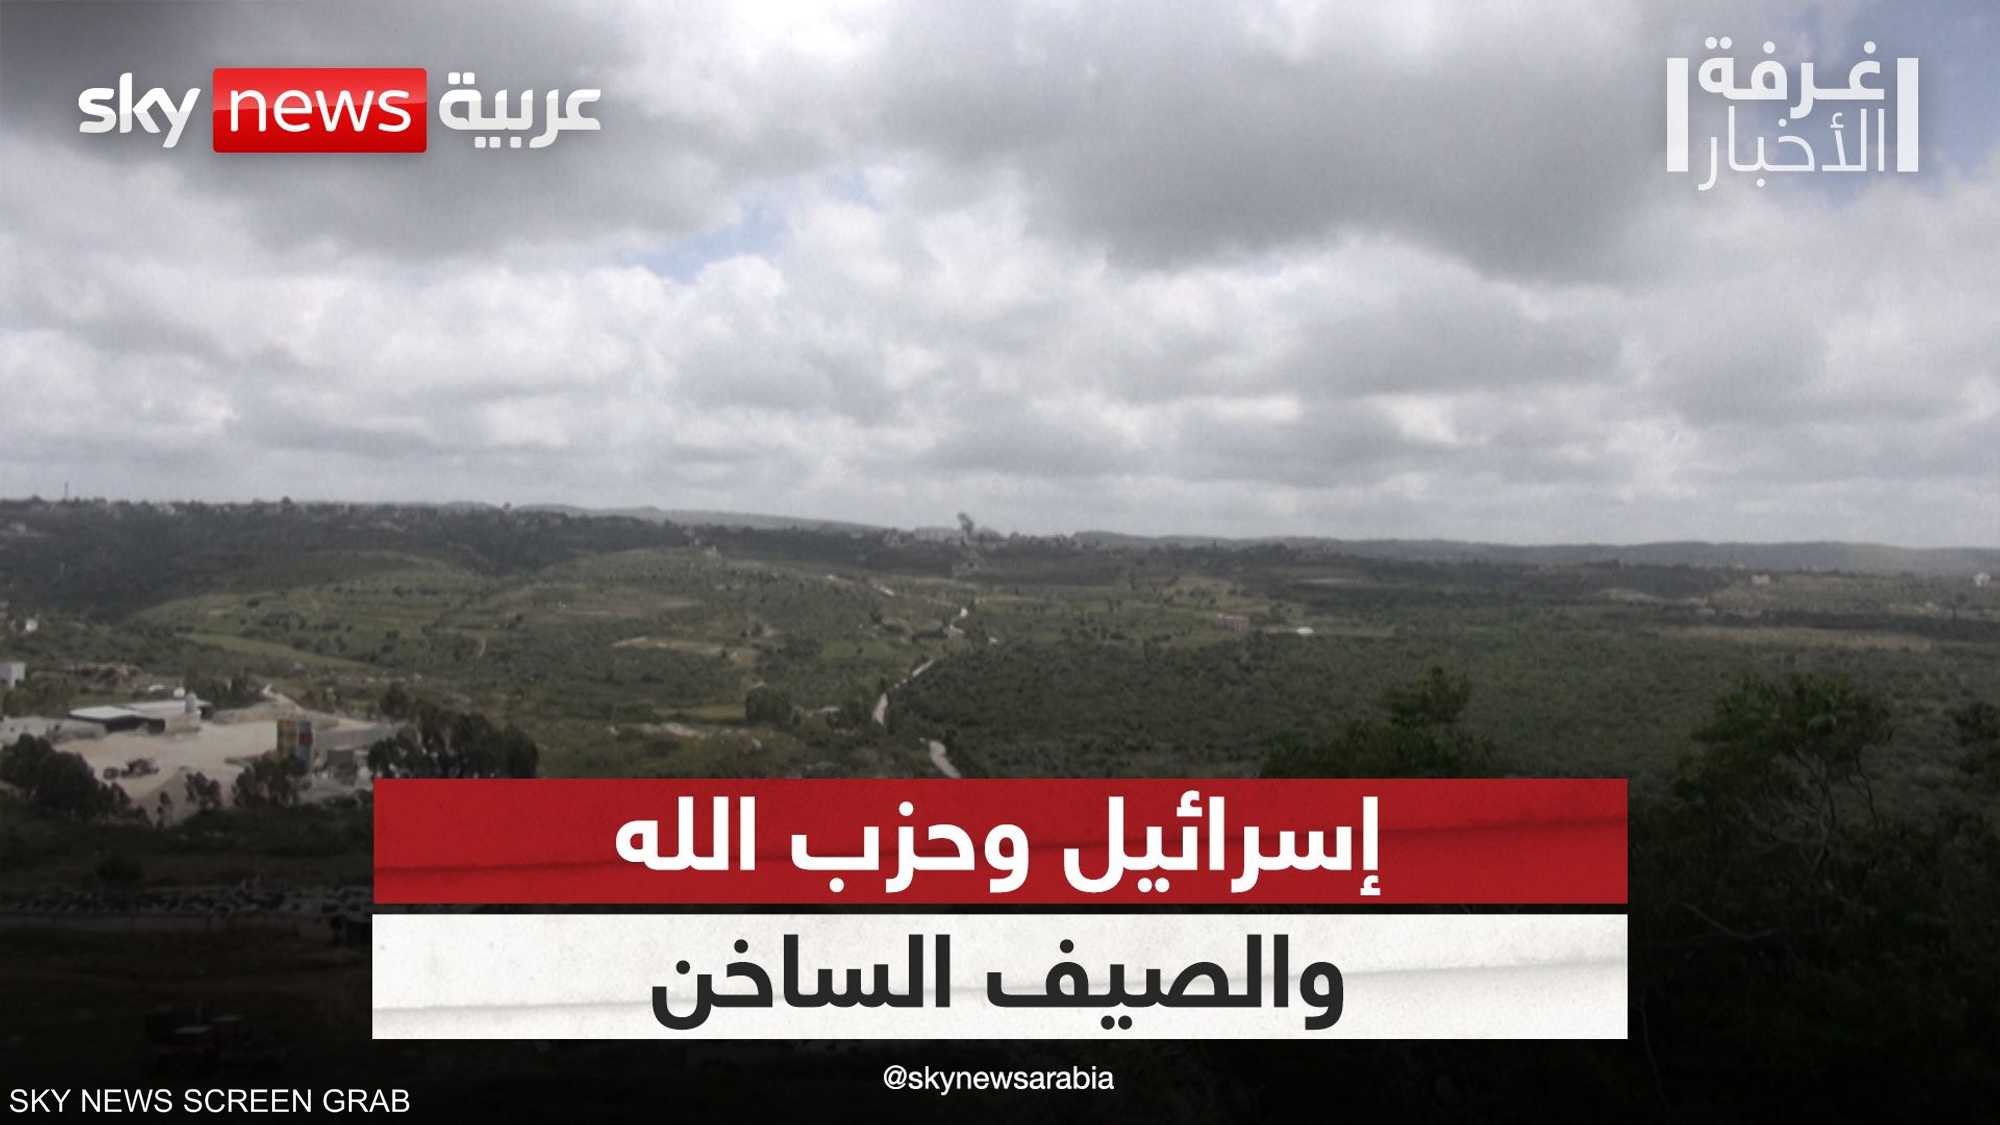 إسرائيل تحذر من "صيف ساخن" في ظل التوتر على حدود لبنان